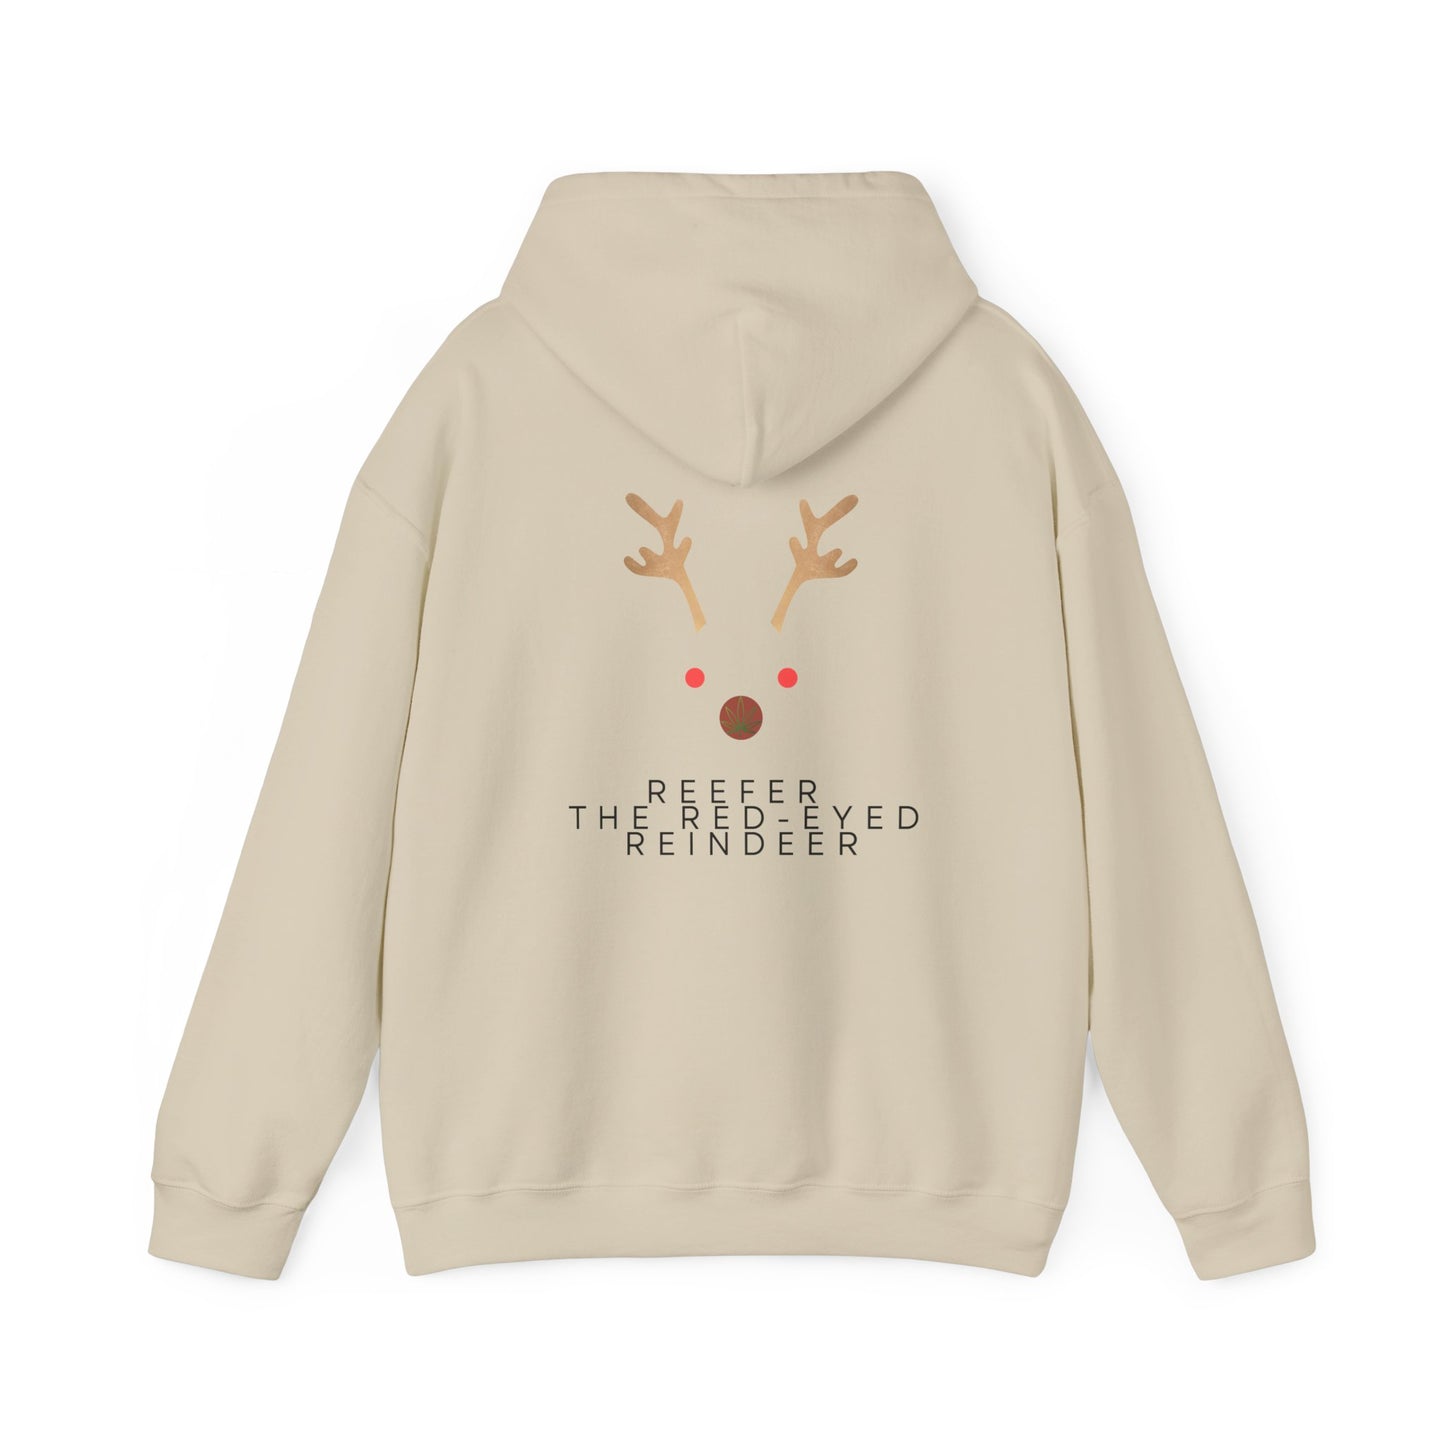 Reindeer Unisex Heavy Blend Hooded Sweatshirt